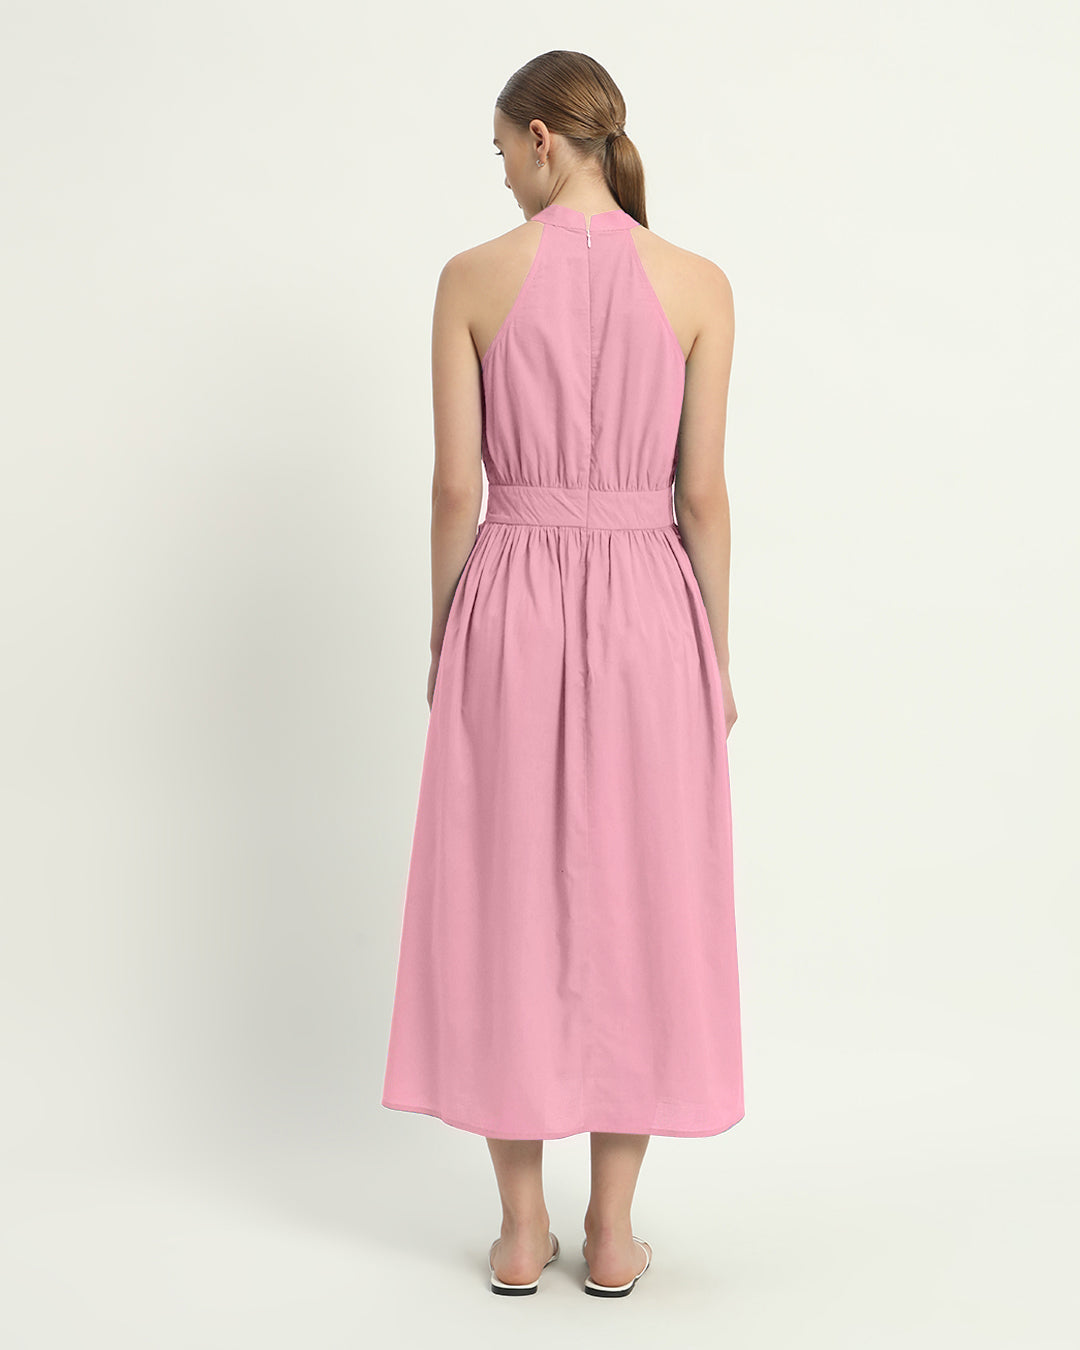 The Massena Fondant Pink Cotton Dress